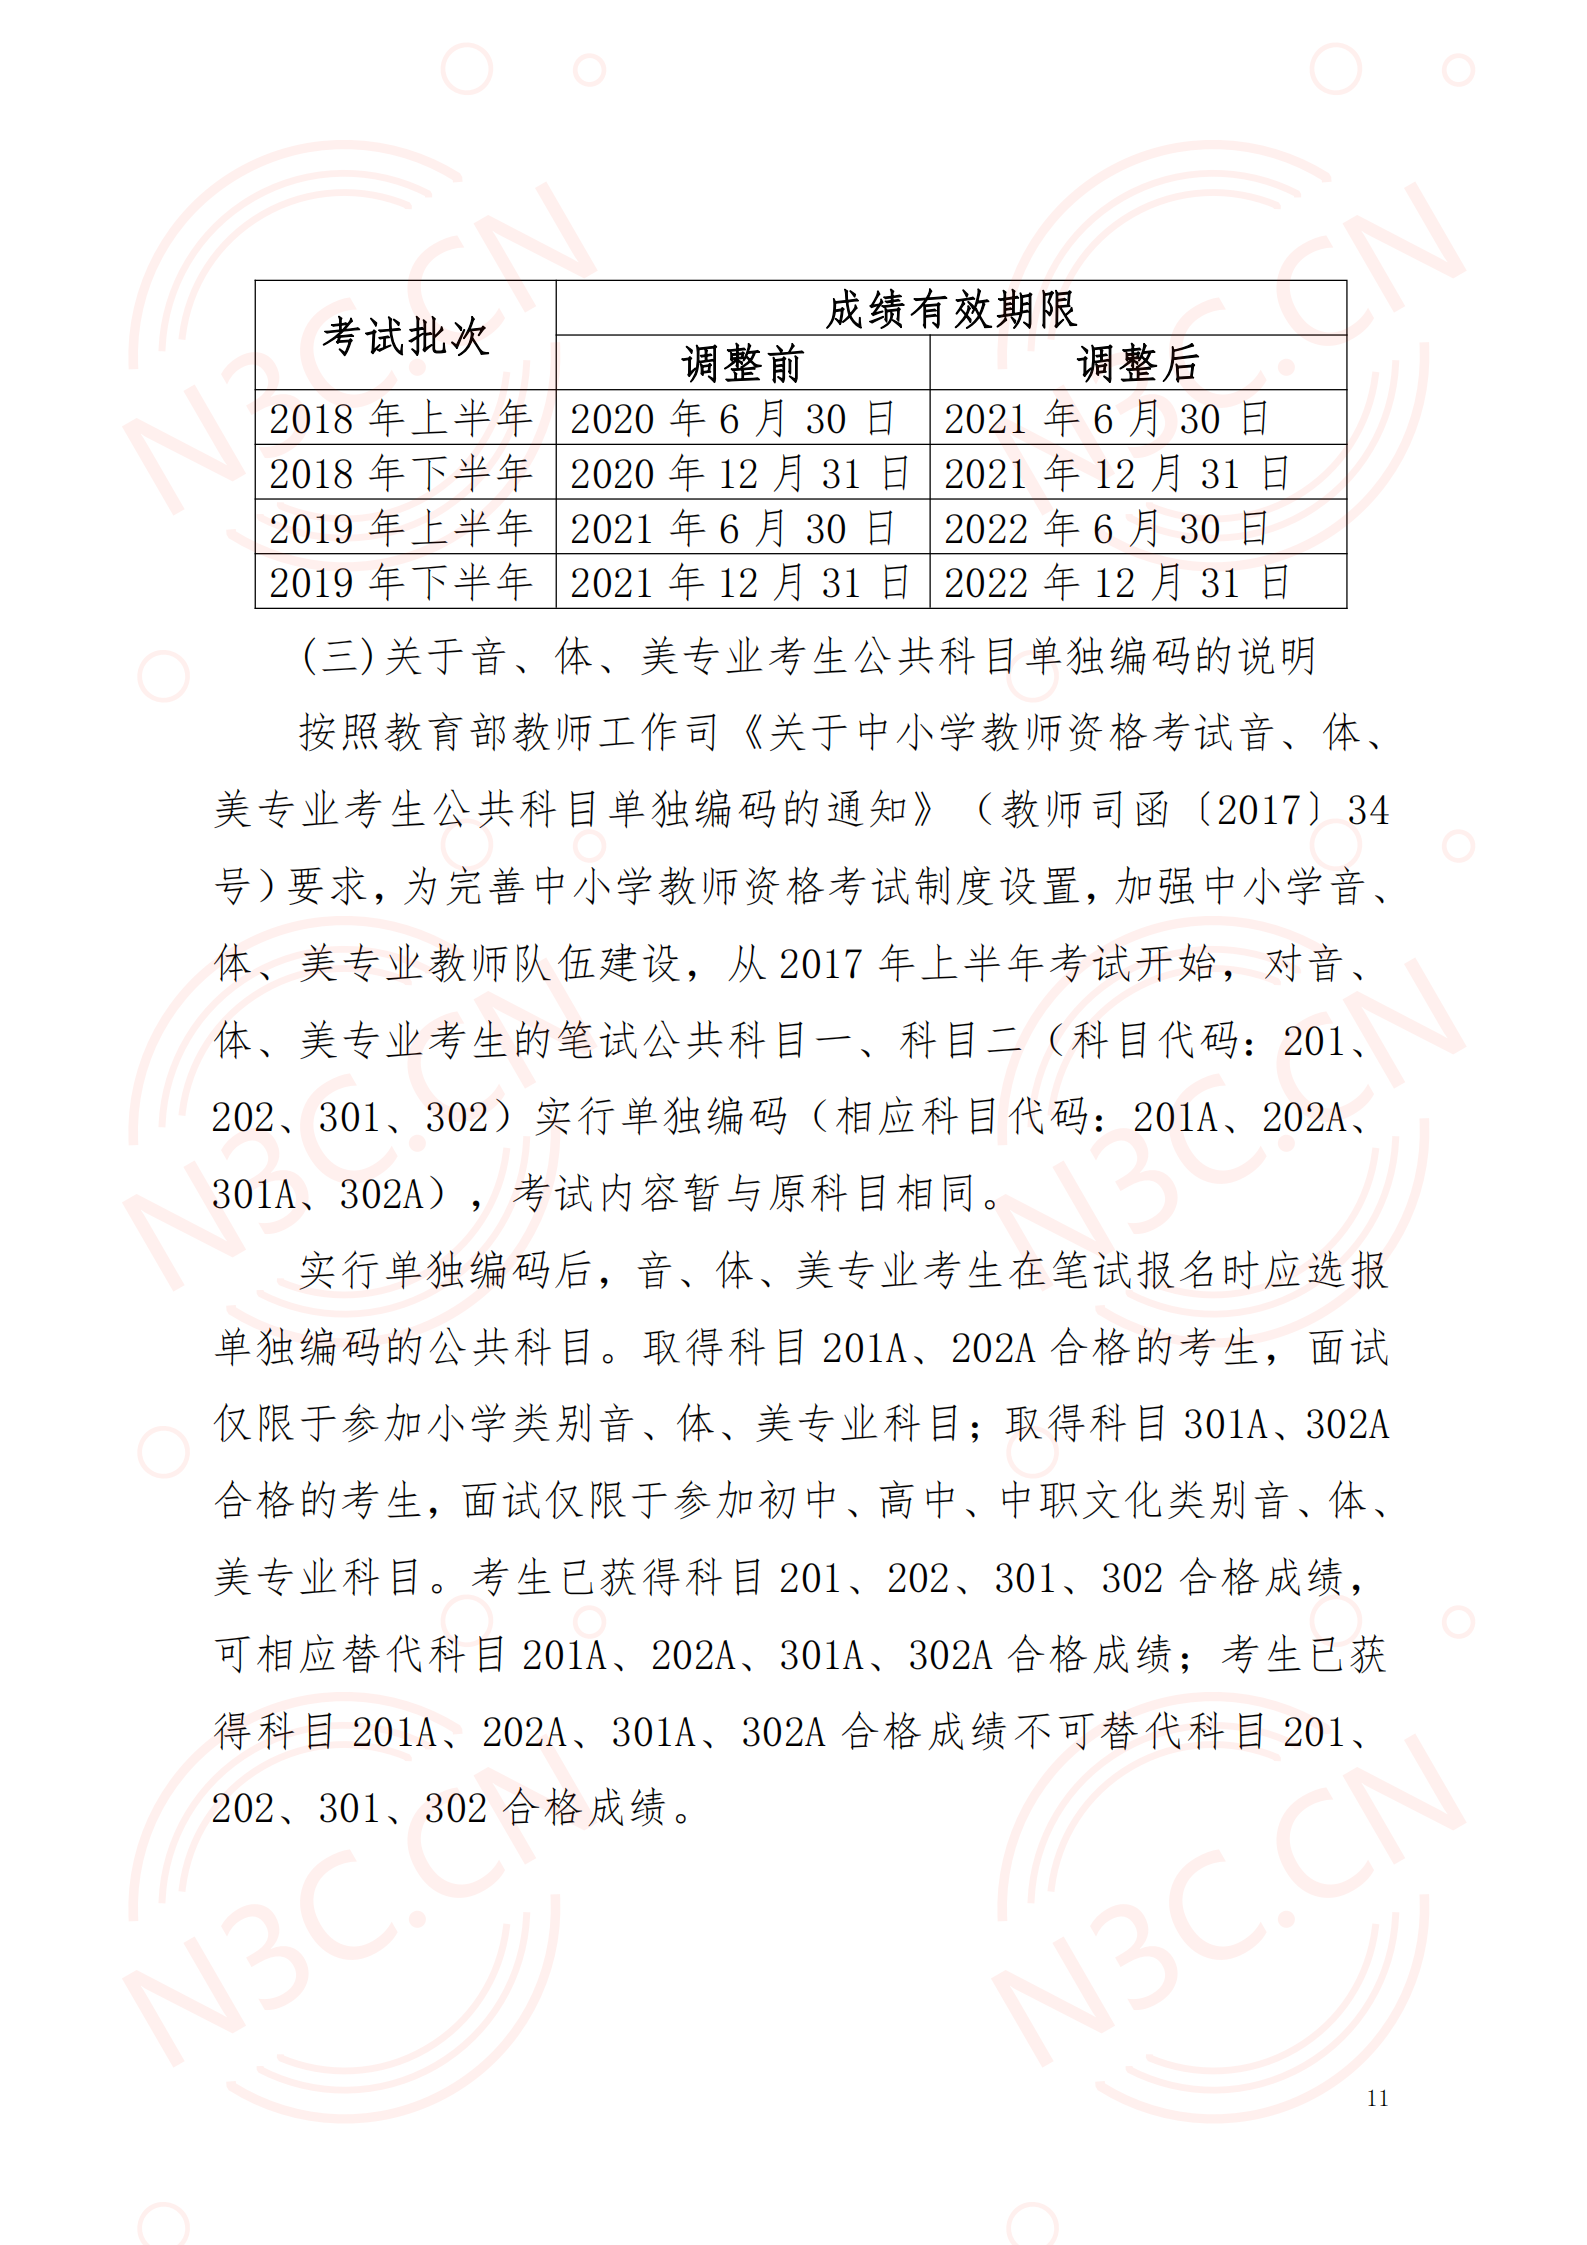 青海2020年下半年中小学教师资格考试（笔试）报名公告(图11)